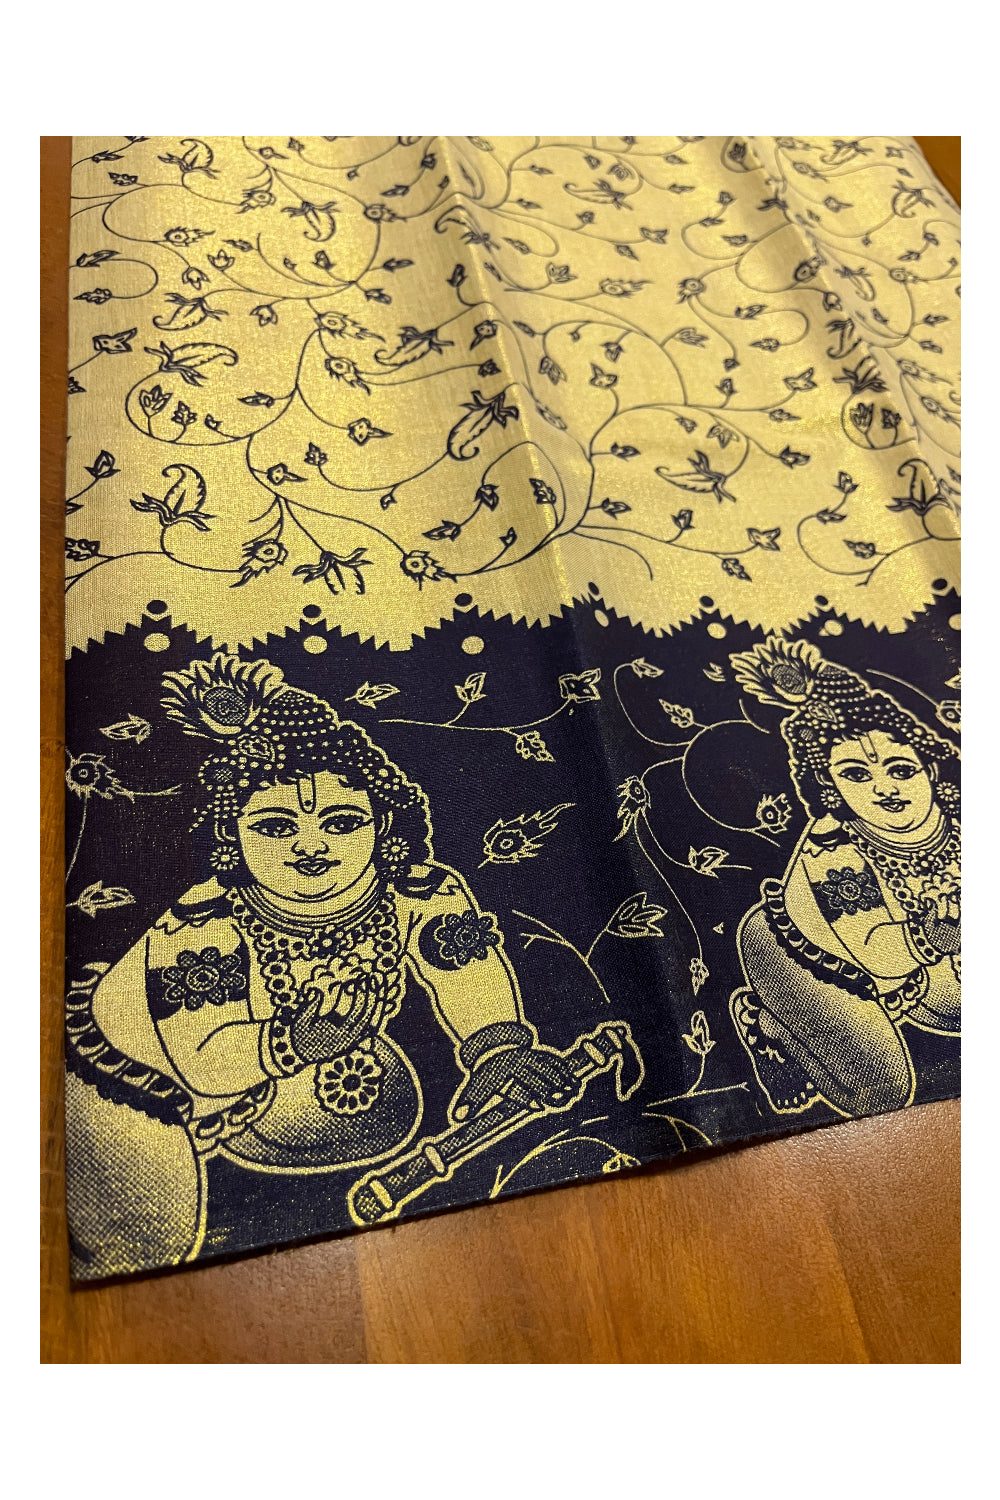 Kerala Tissue Block Printed Pavada and Dark Blue Designer Blouse Material for Kids 3 Meters